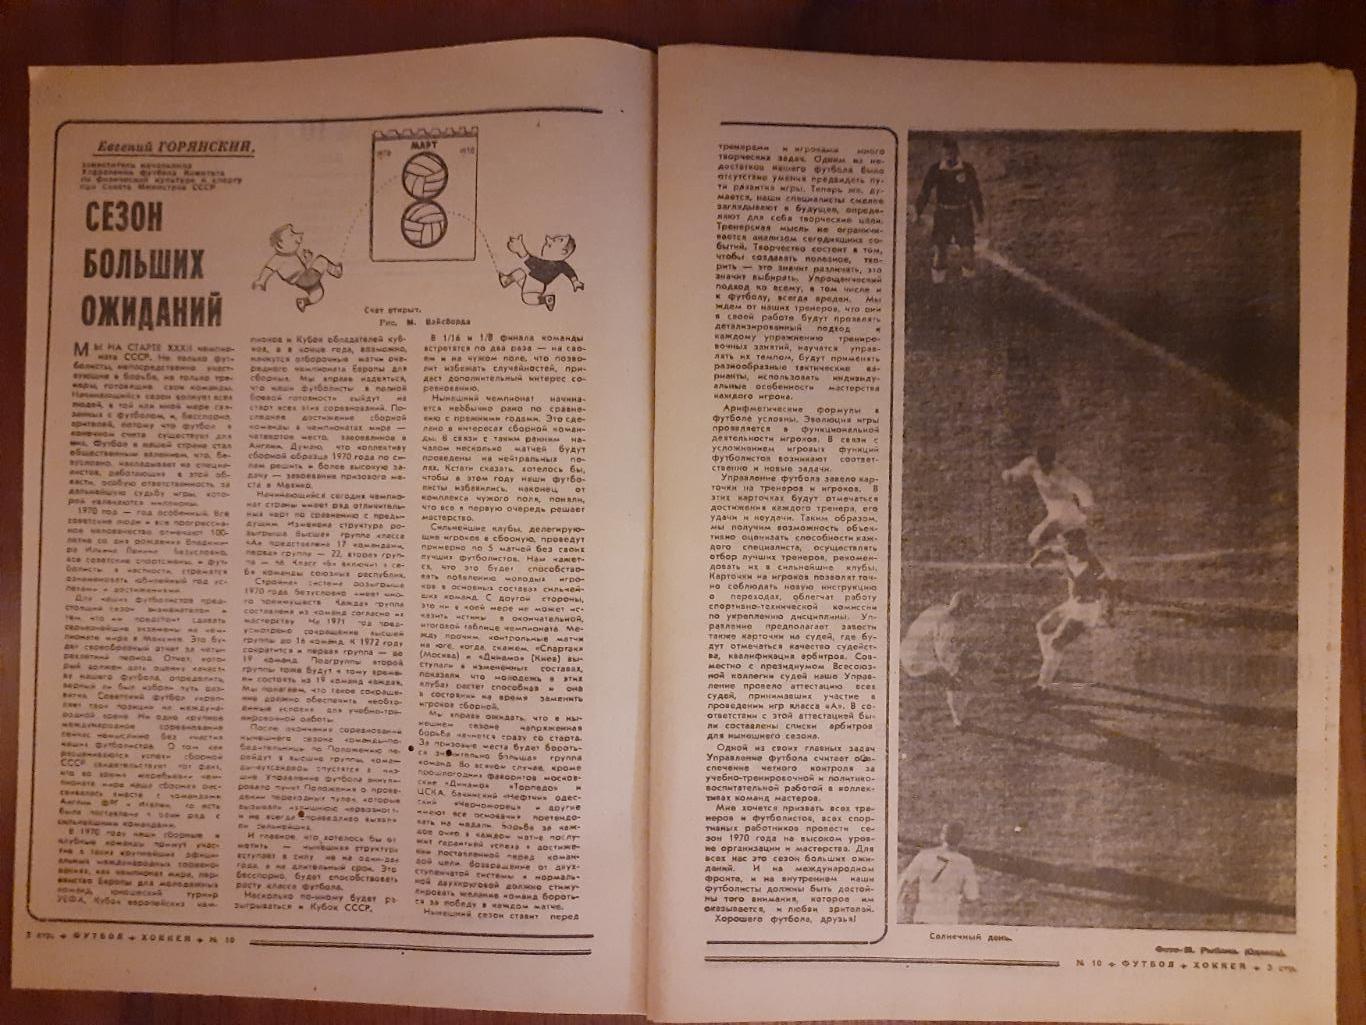 еженедельник футбол-хоккей #10,1970 1